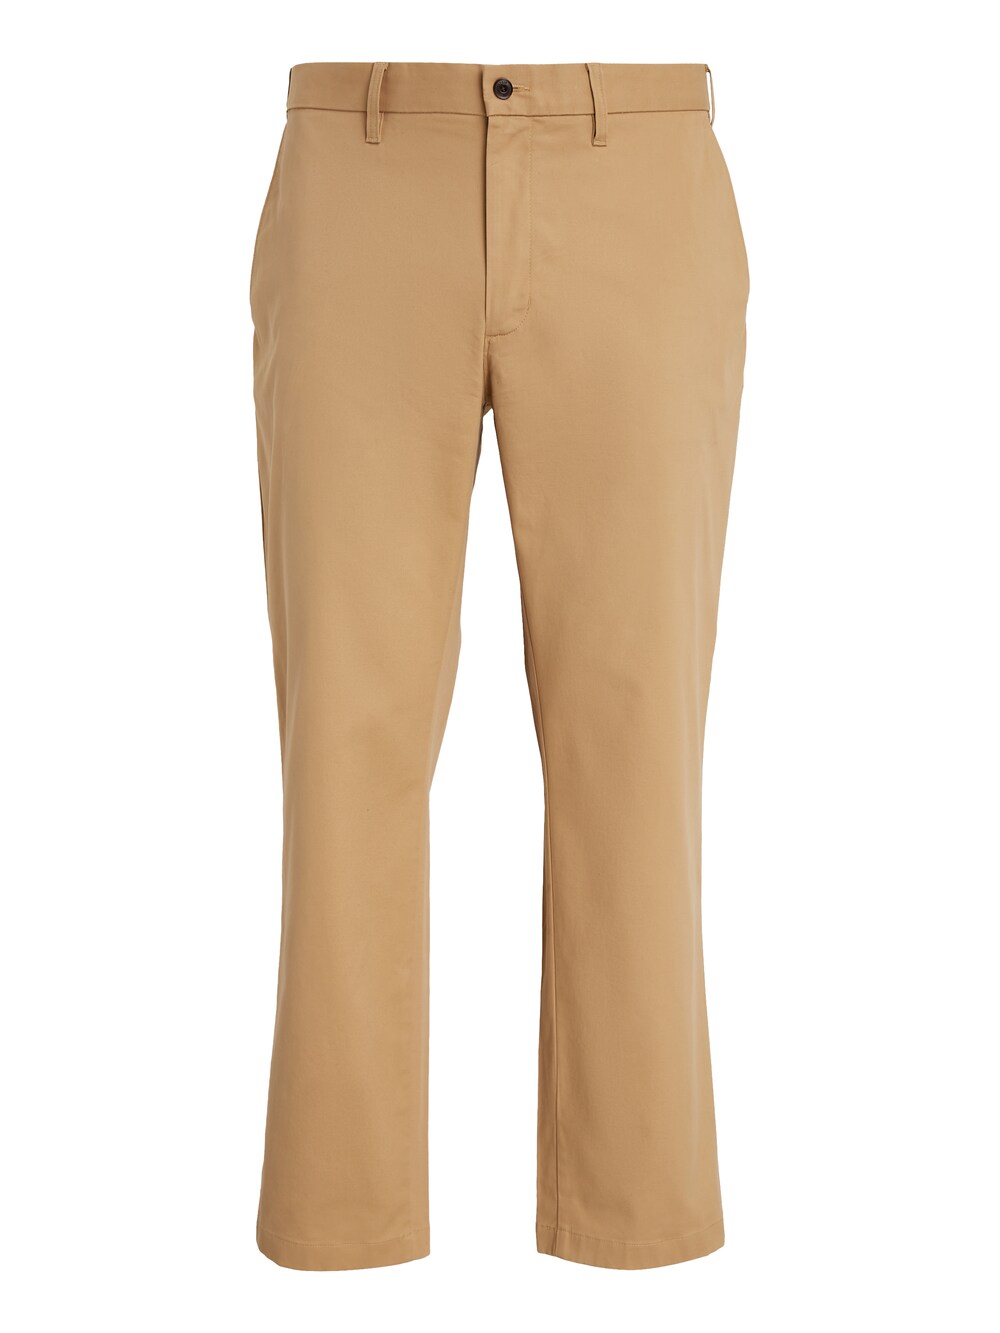 Обычные брюки чинос Tommy Hilfiger Big & Tall Madison, светло-коричневый tommy hilfiger коричневый черный